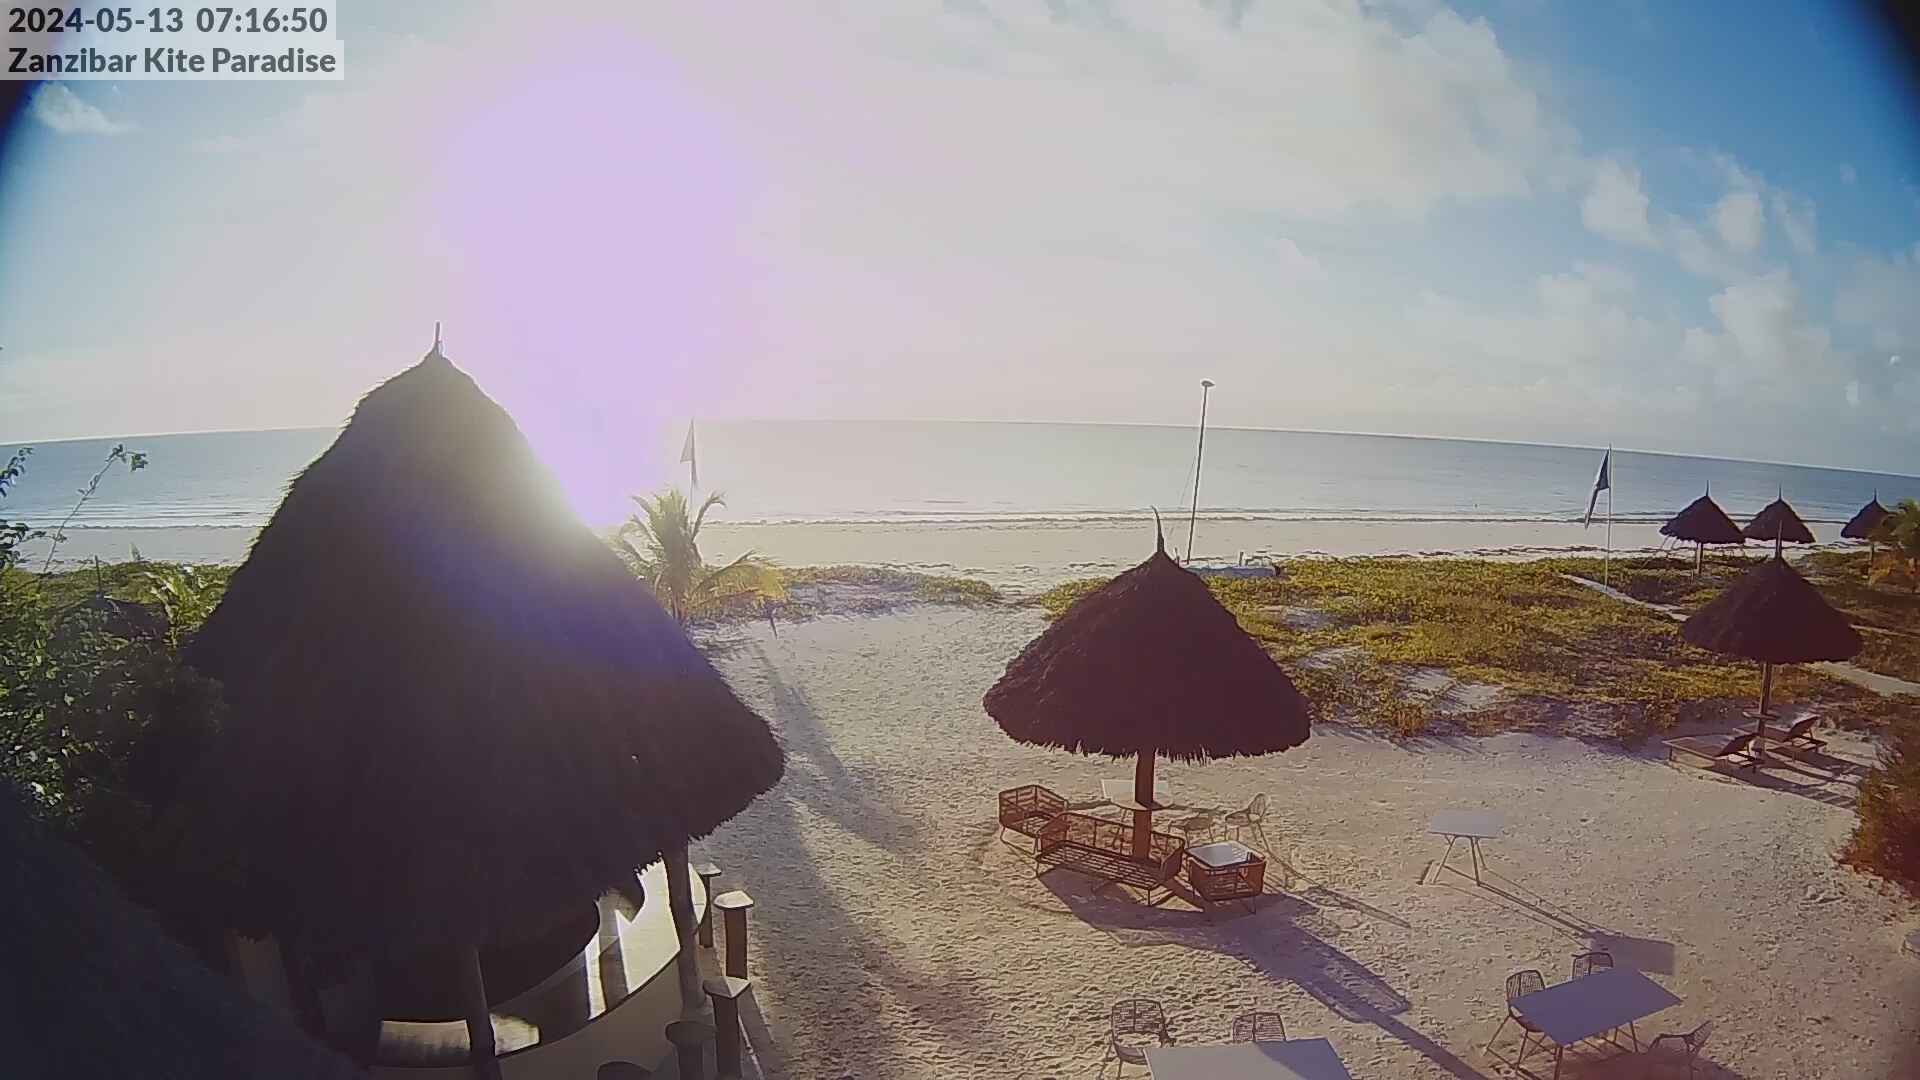 Paje Beach (Zanzibar) Ma. 07:17